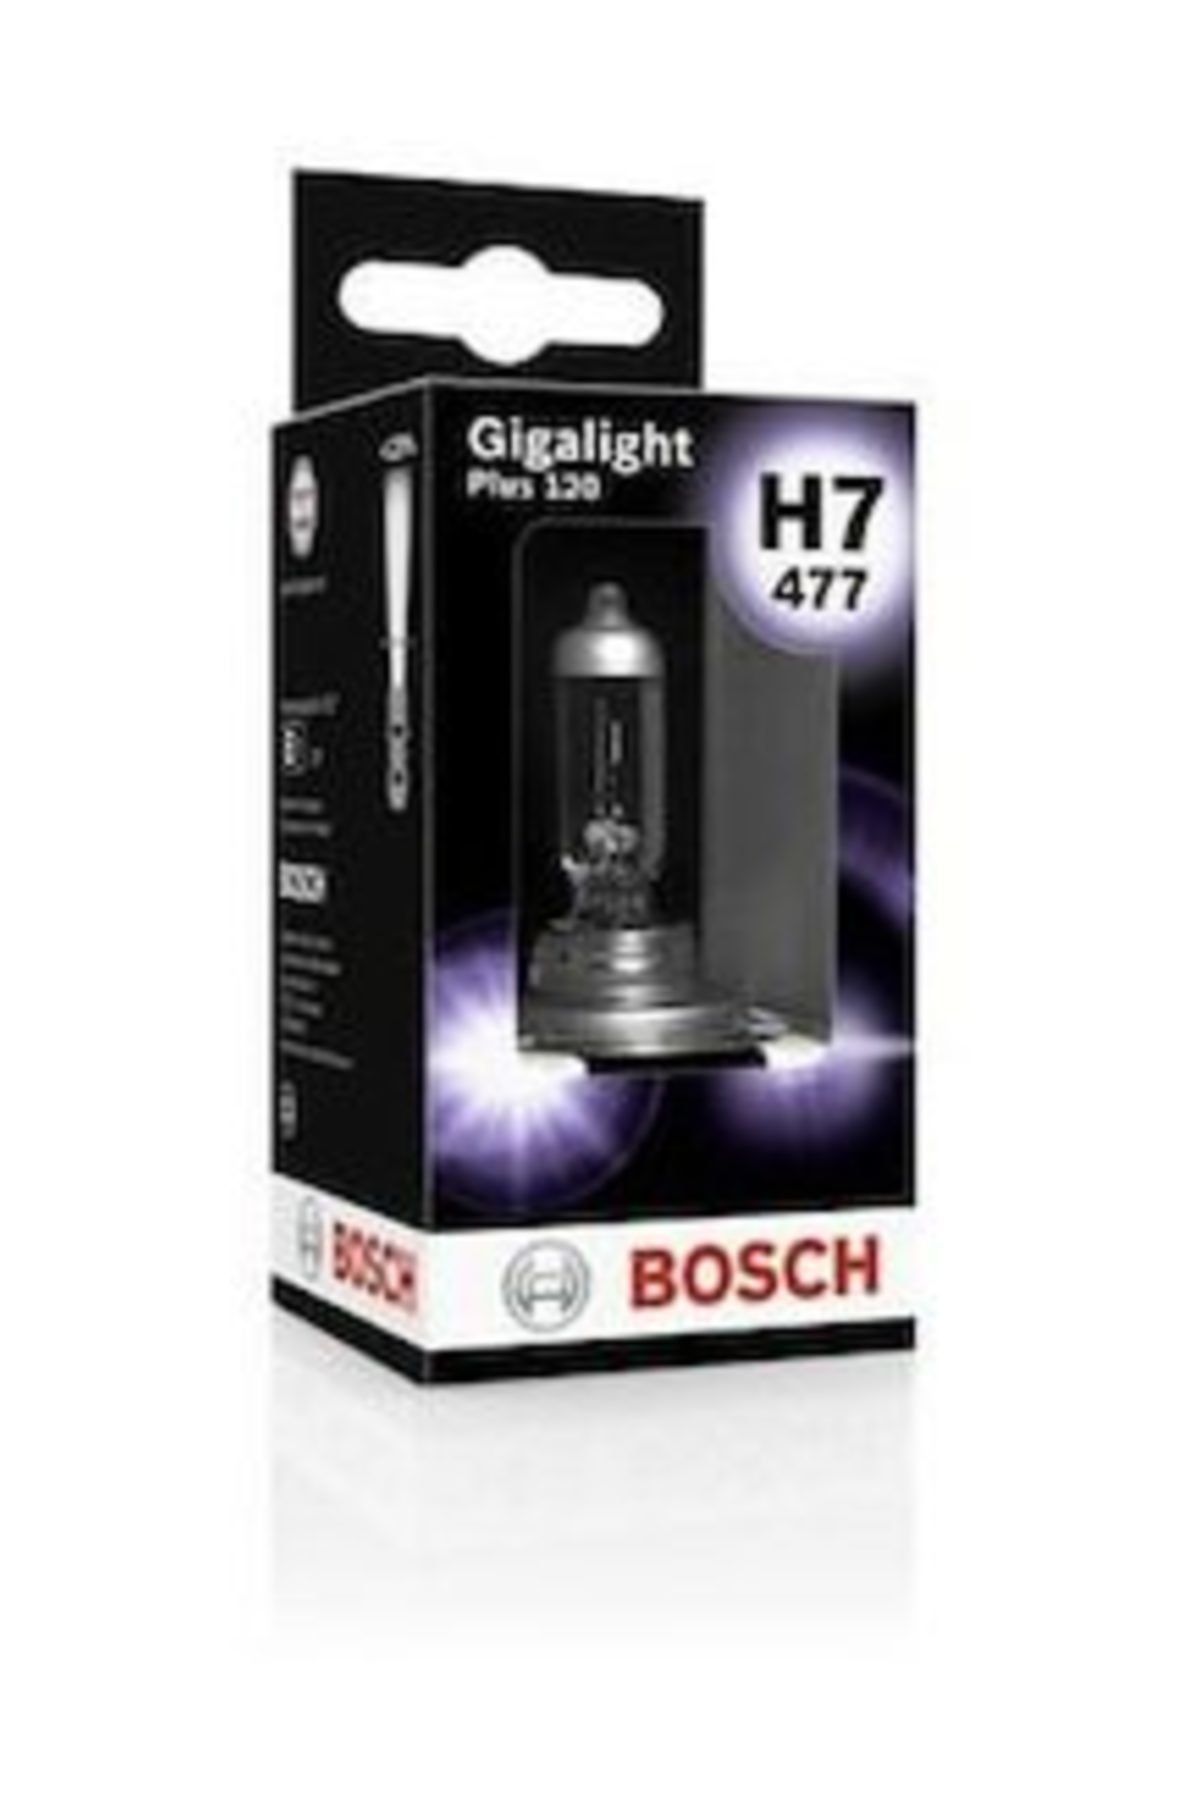 Bosch Gigalight Plus 120 H7 Ampül